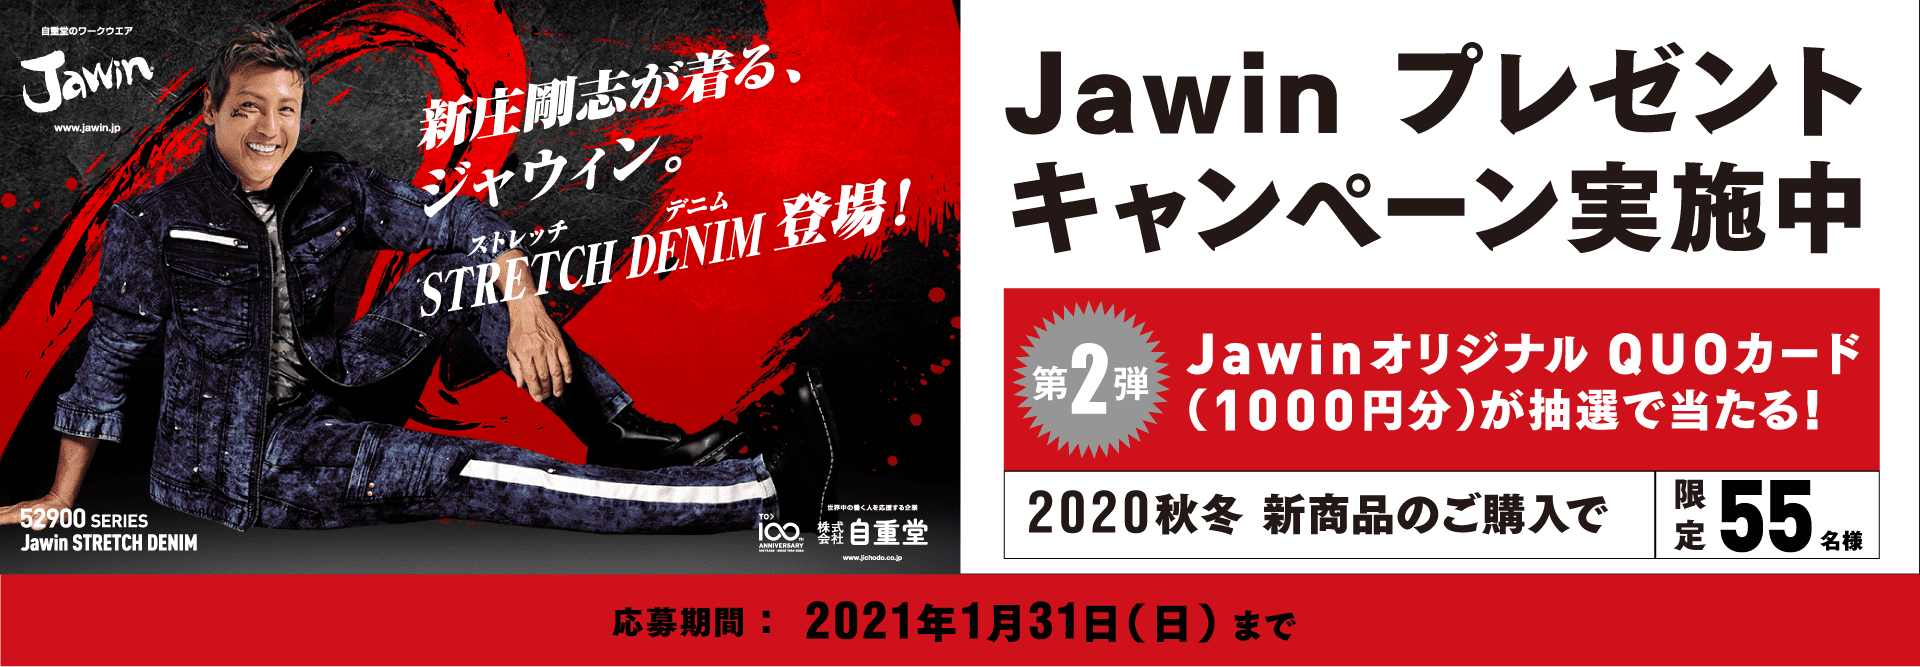 Jawin 2020AW プレゼントキャンペーン | 新庄剛志がモデルの作業服、ワークウェア、空調服|Jawin(自重堂)公式サイト